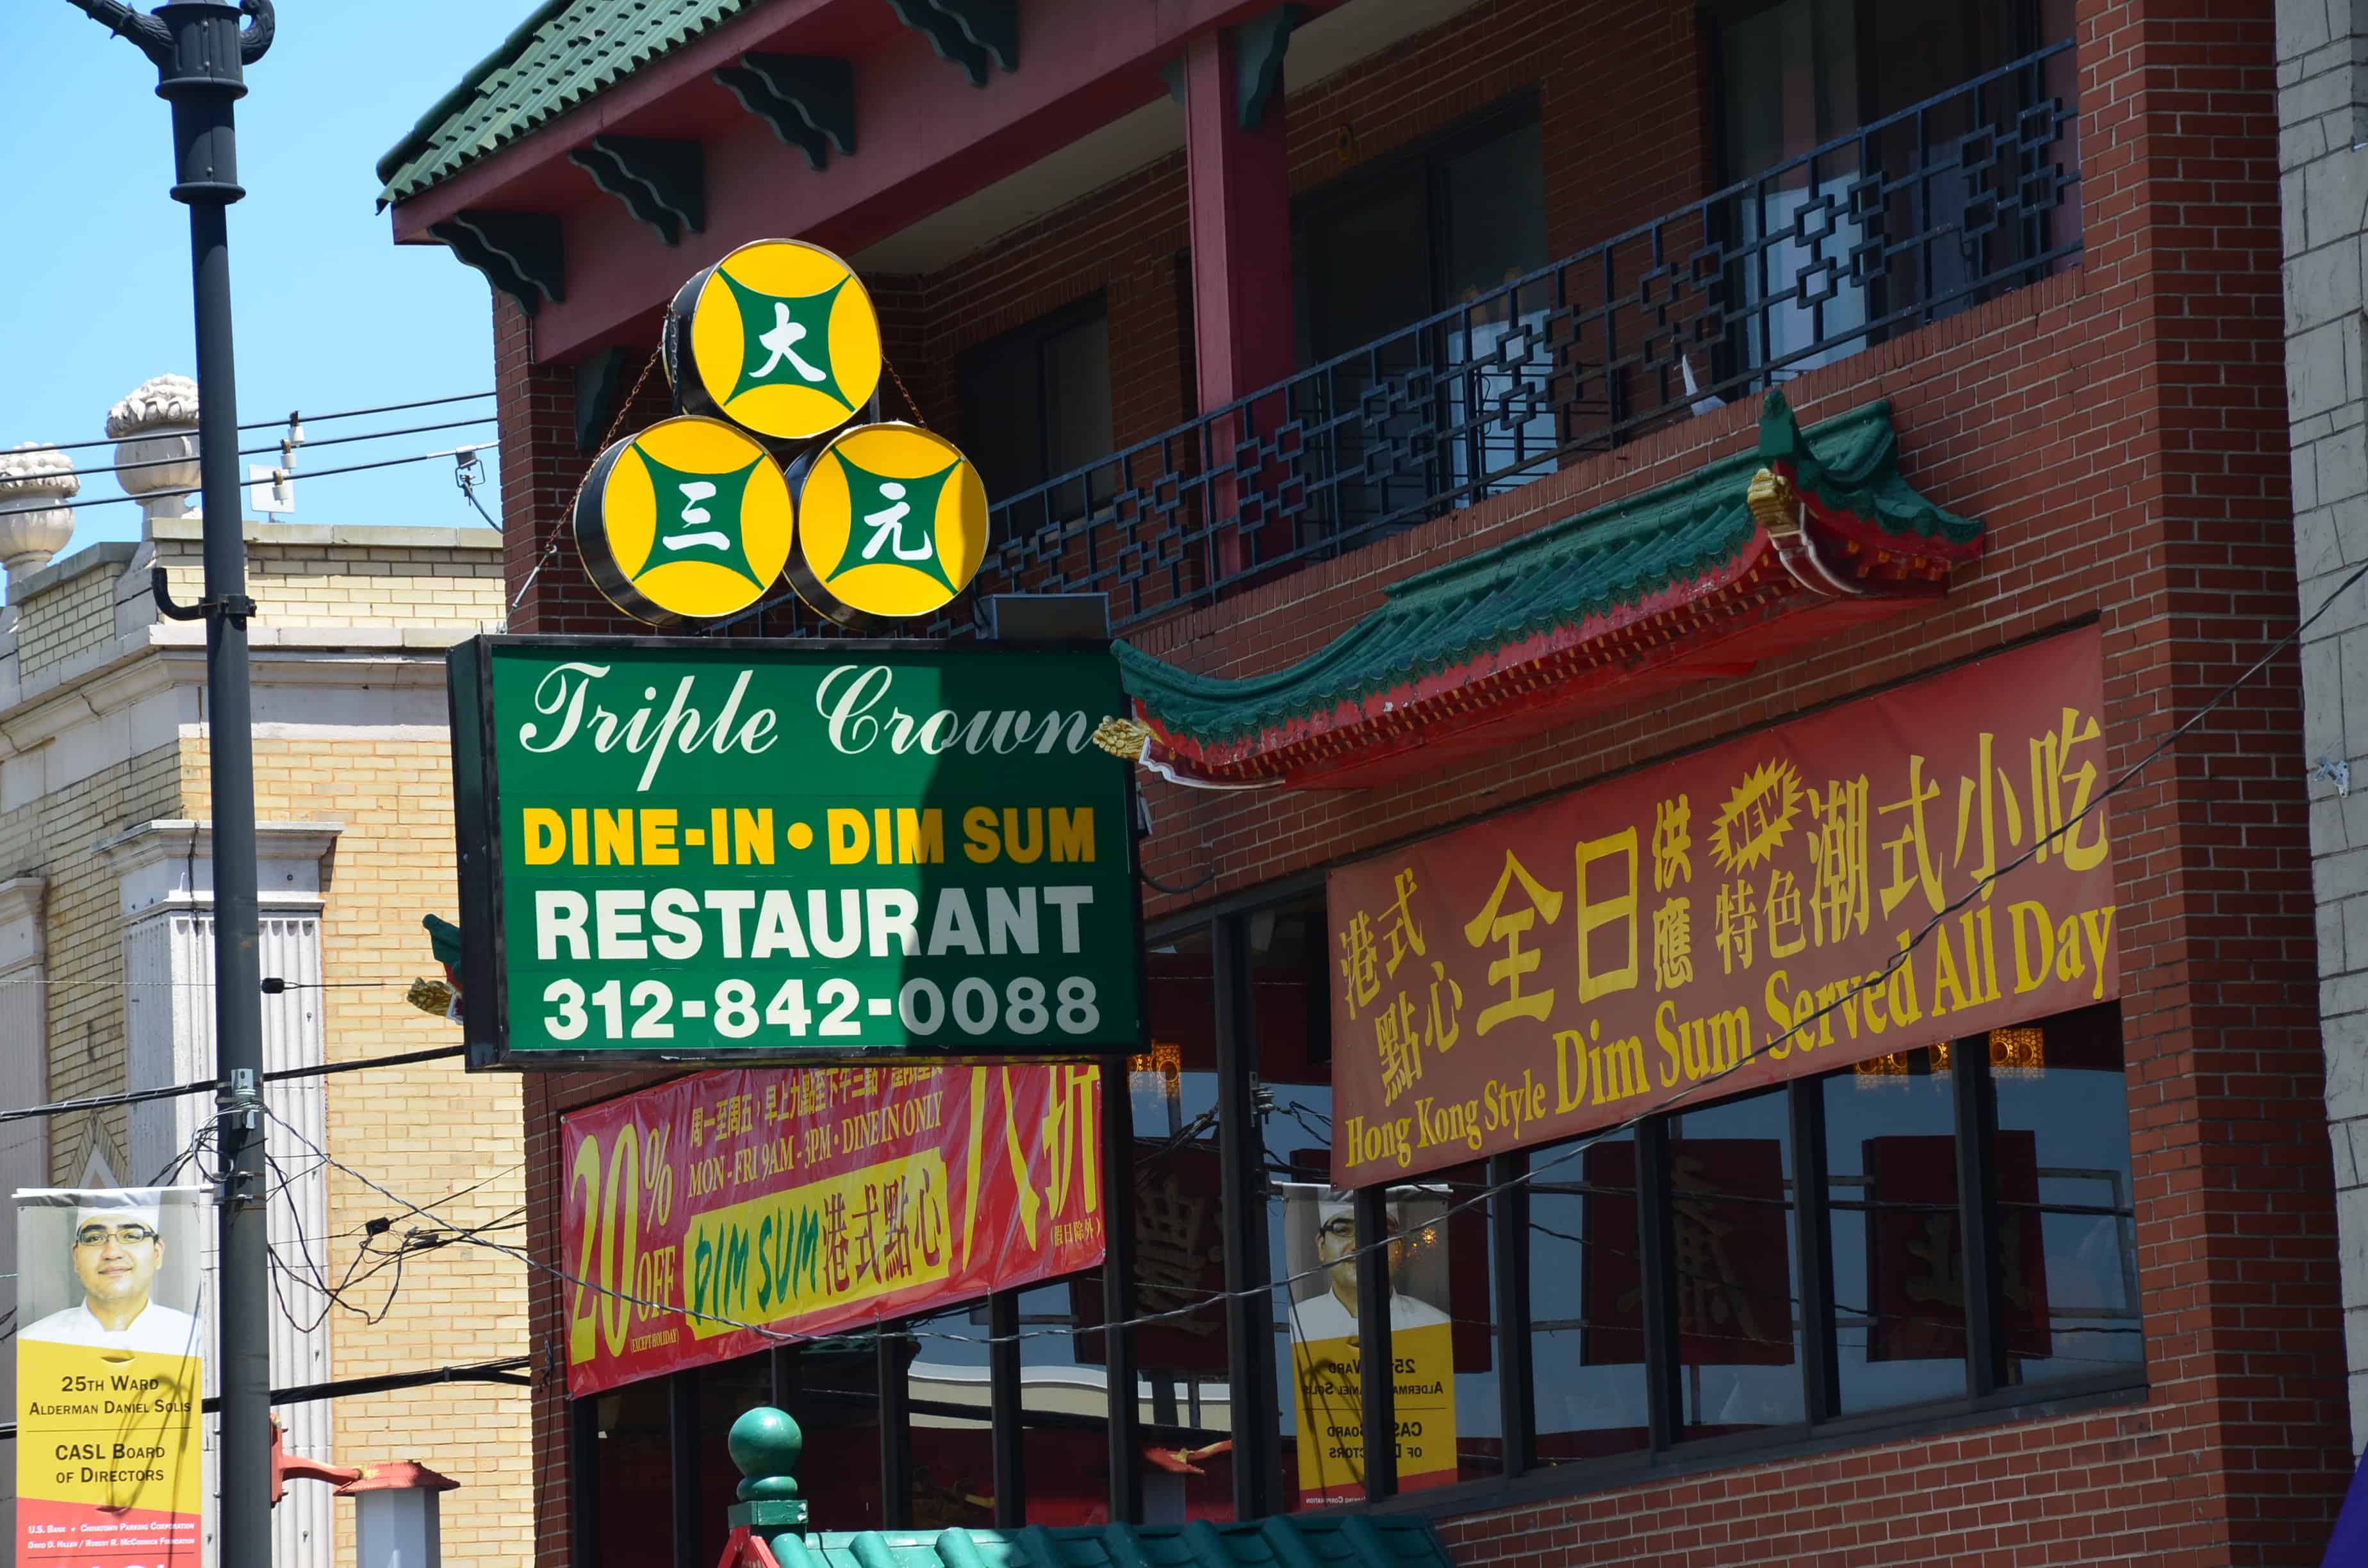 Triple Crown Restaurant in Chinatown, Chicago, Illinois